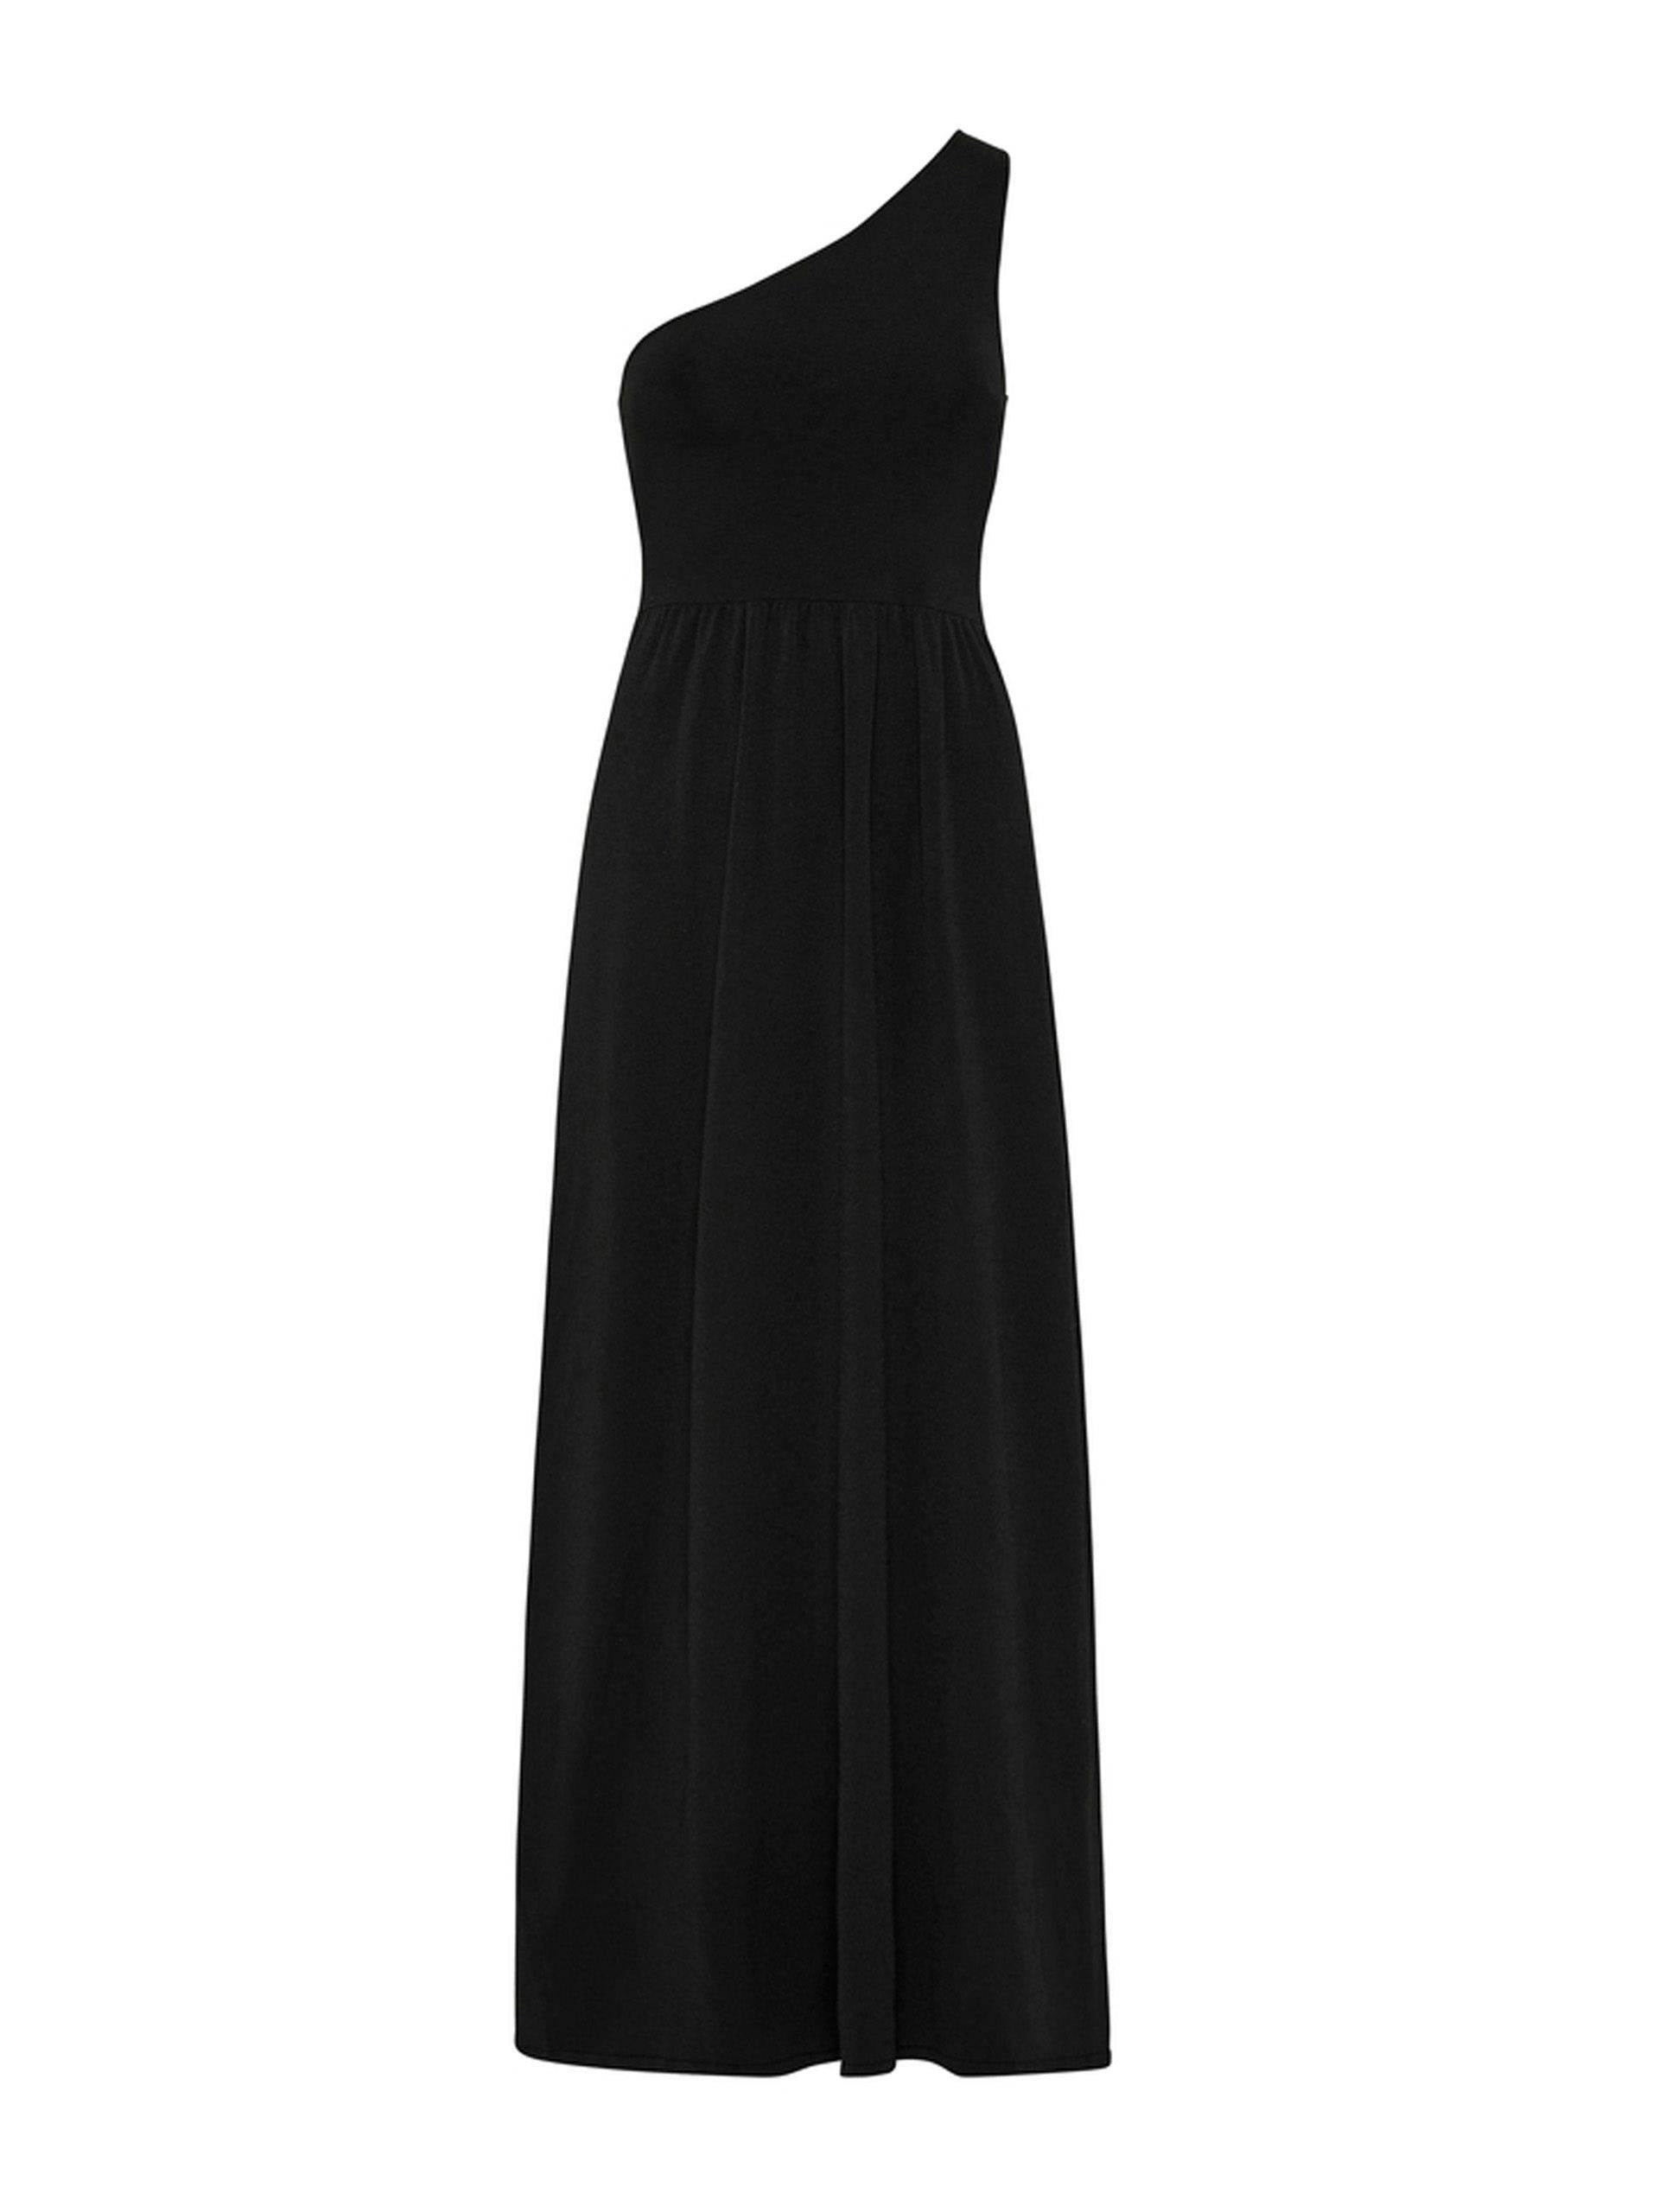 Black asymmetric knit dress